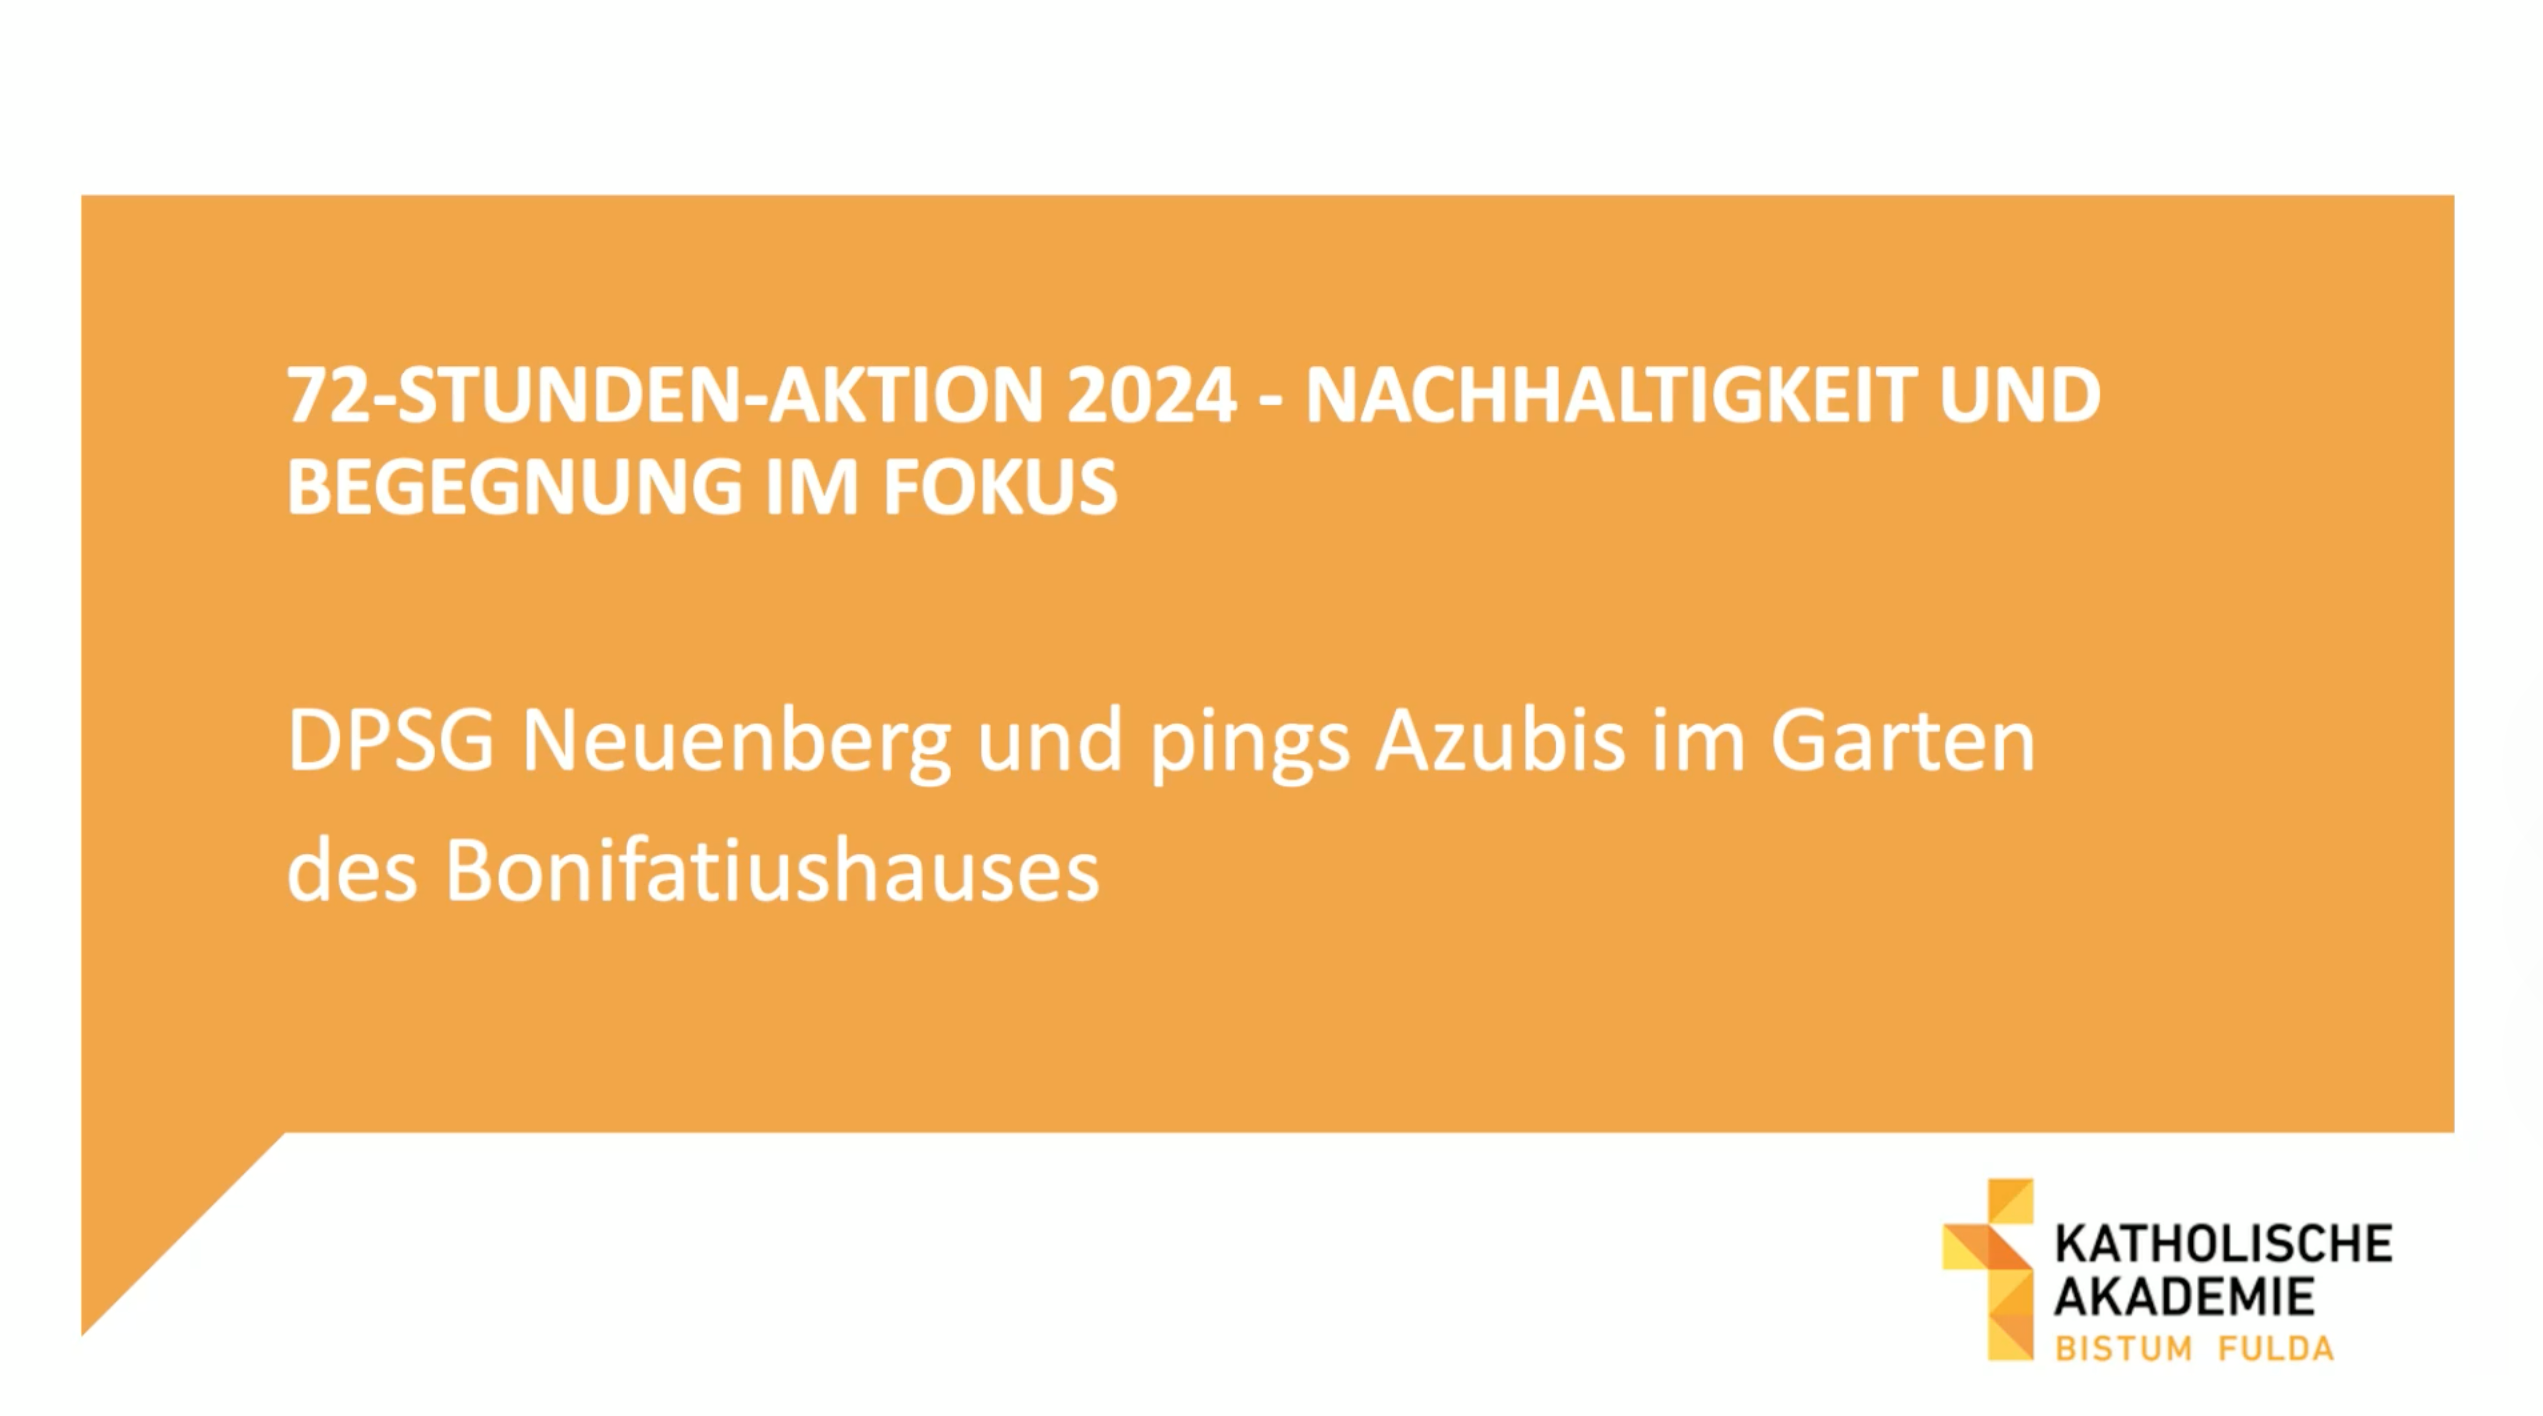 72-Stunden-Aktion der DPSG Neuenberg und von pings Azubis im Garten des Bonifatiushauses